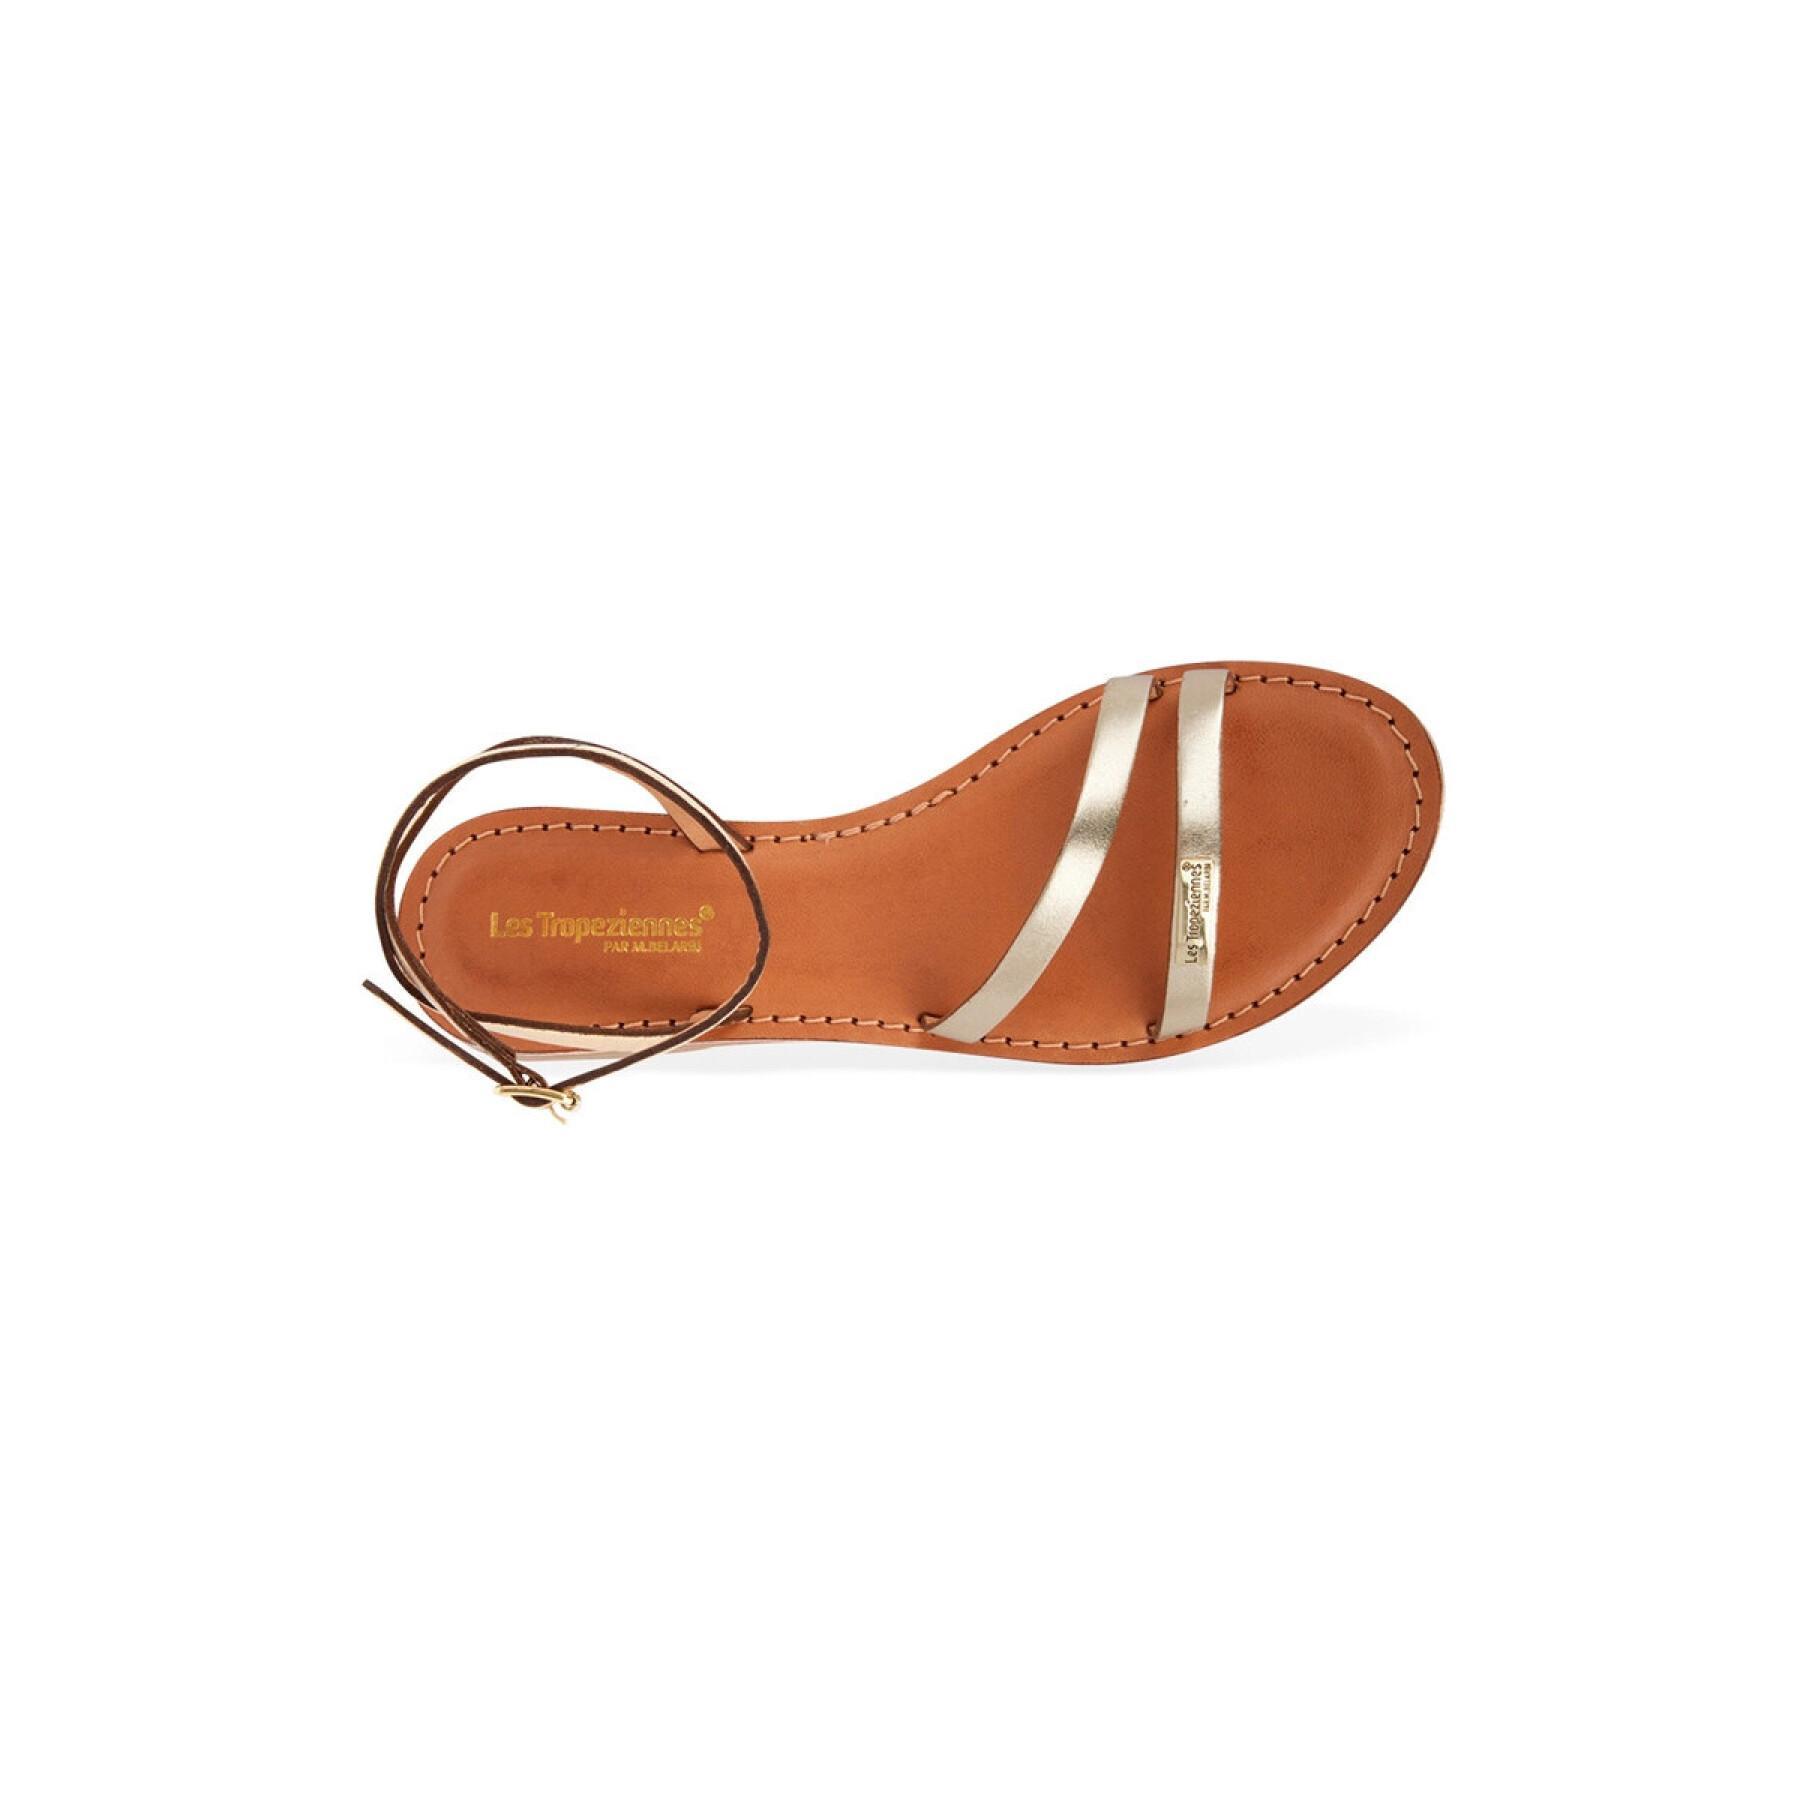 Women's sandals strap les tropeziennes par m.belardi hanak